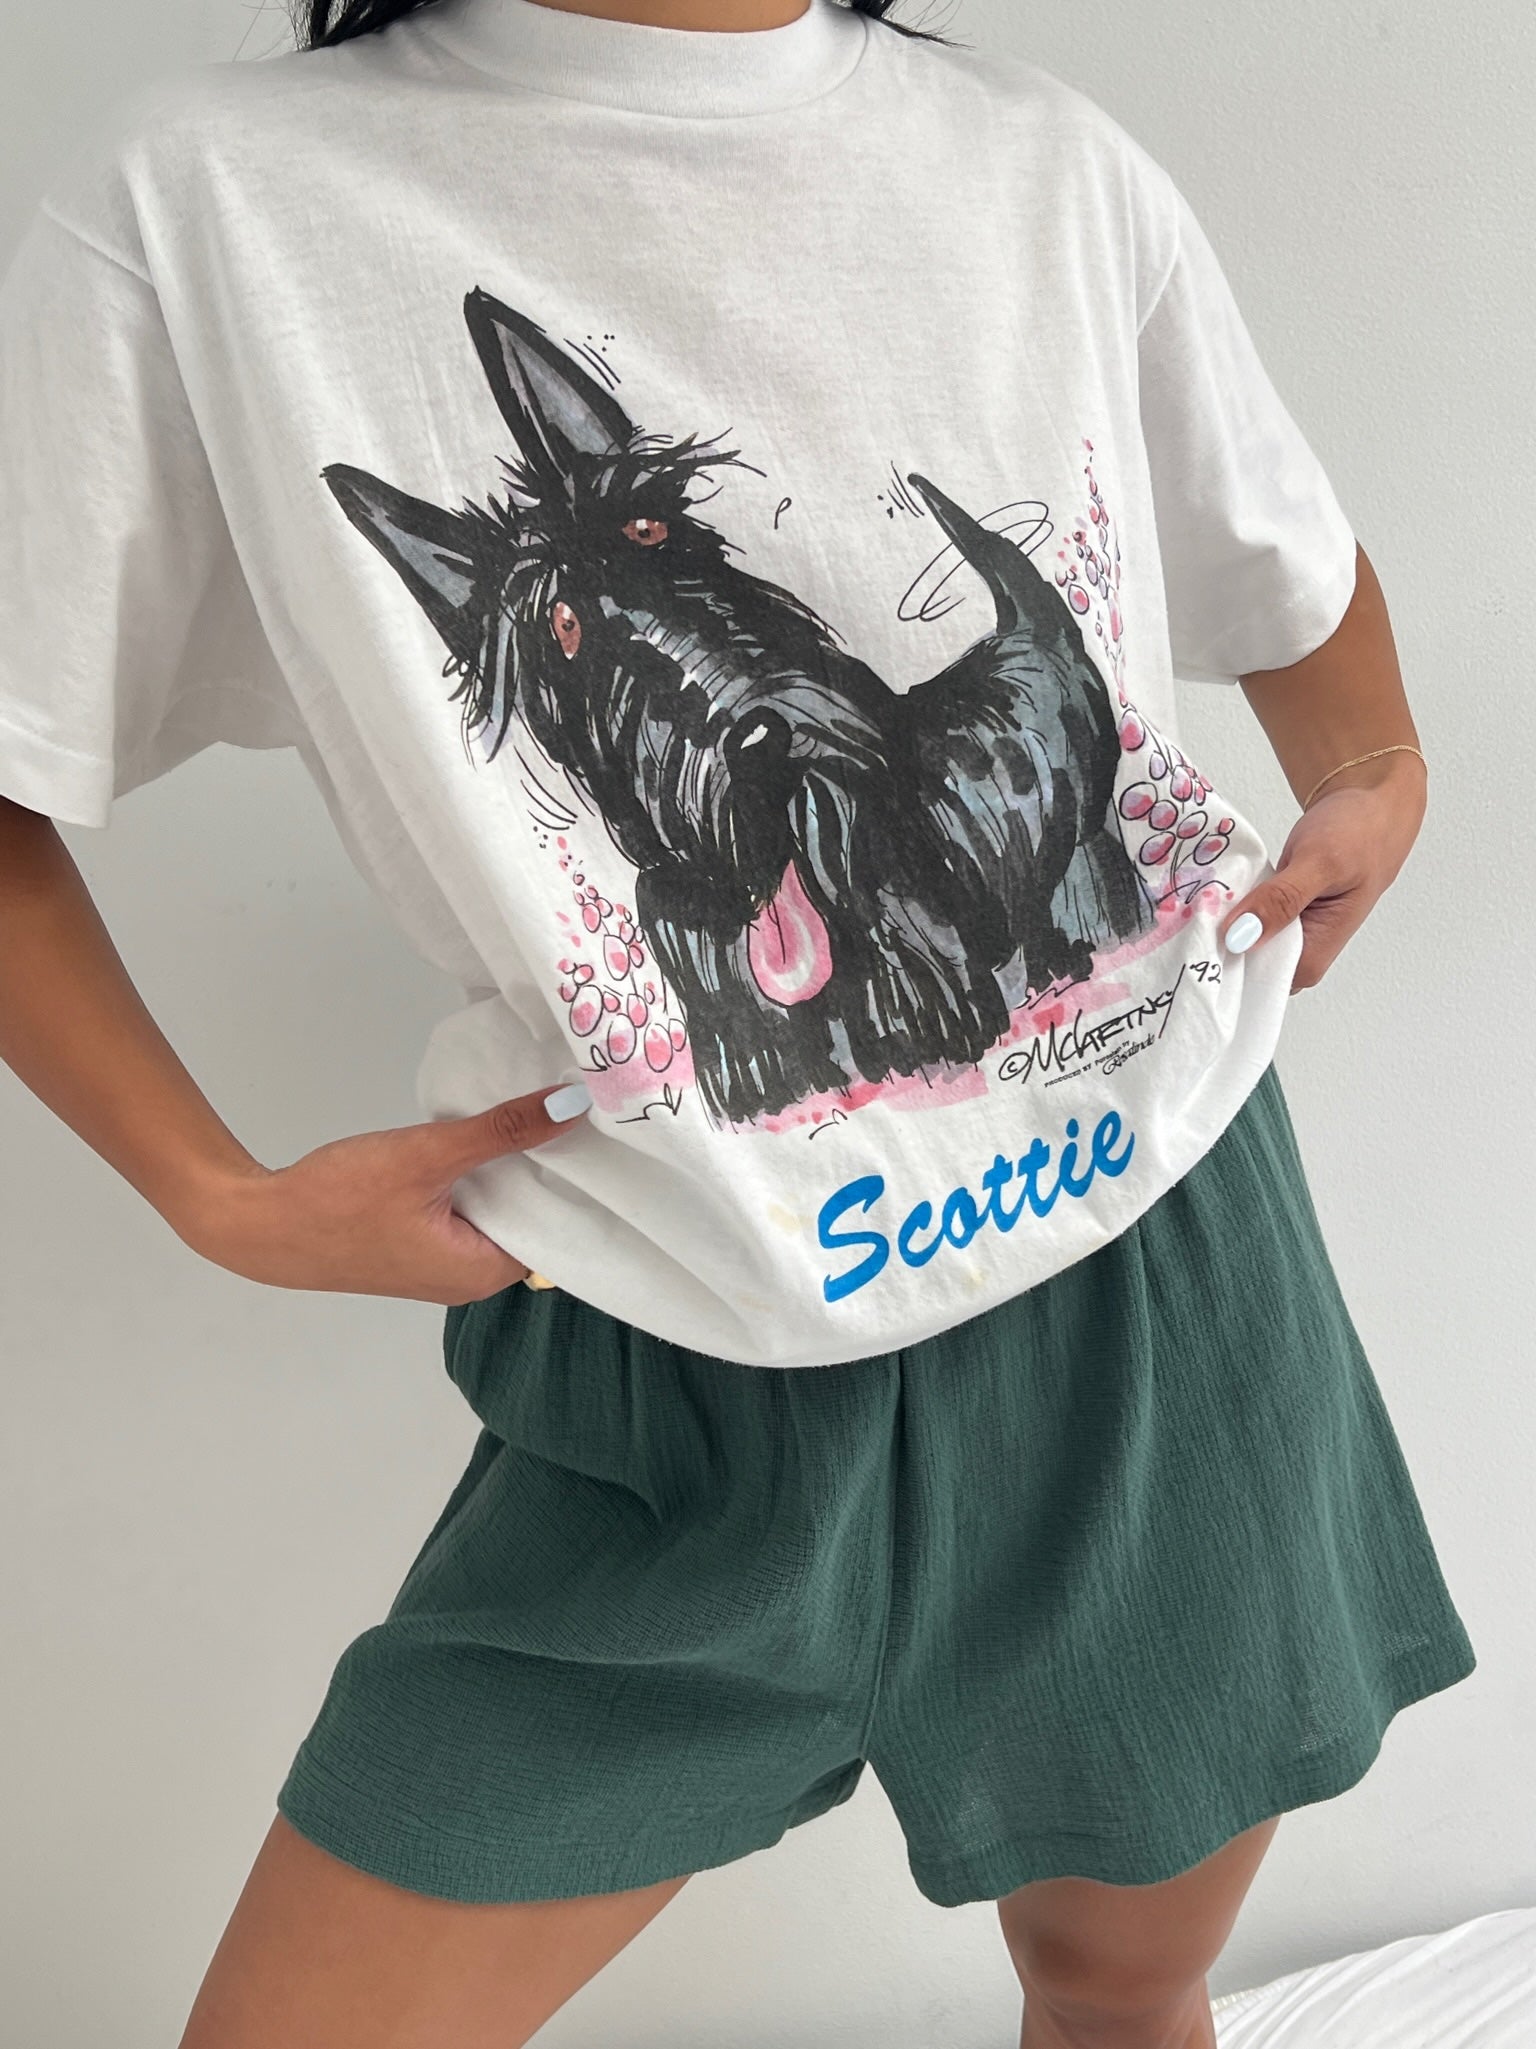 Vintage "Scottie" Dog Graphic T-Shirt